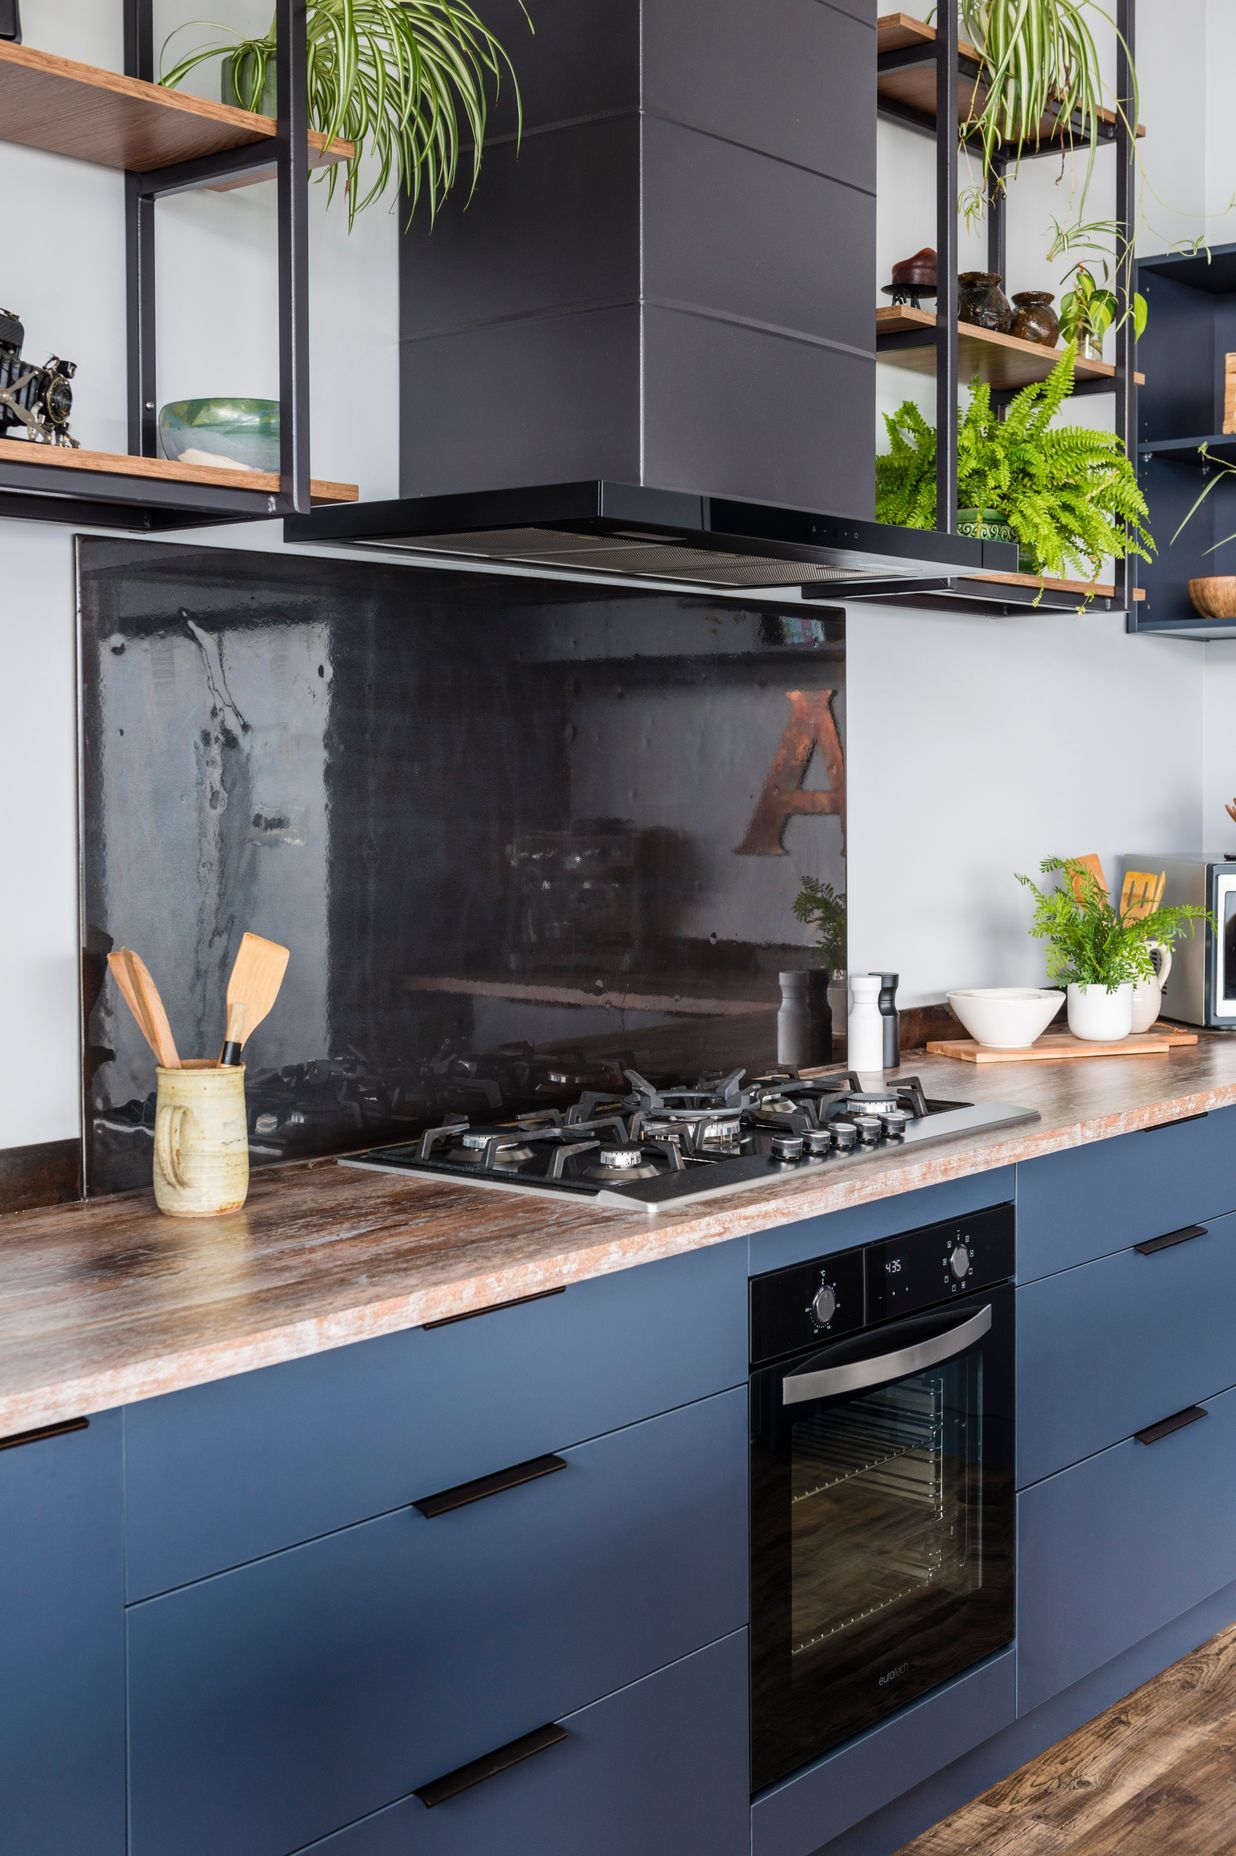 A design-led kitchen appliance range focused on affordability